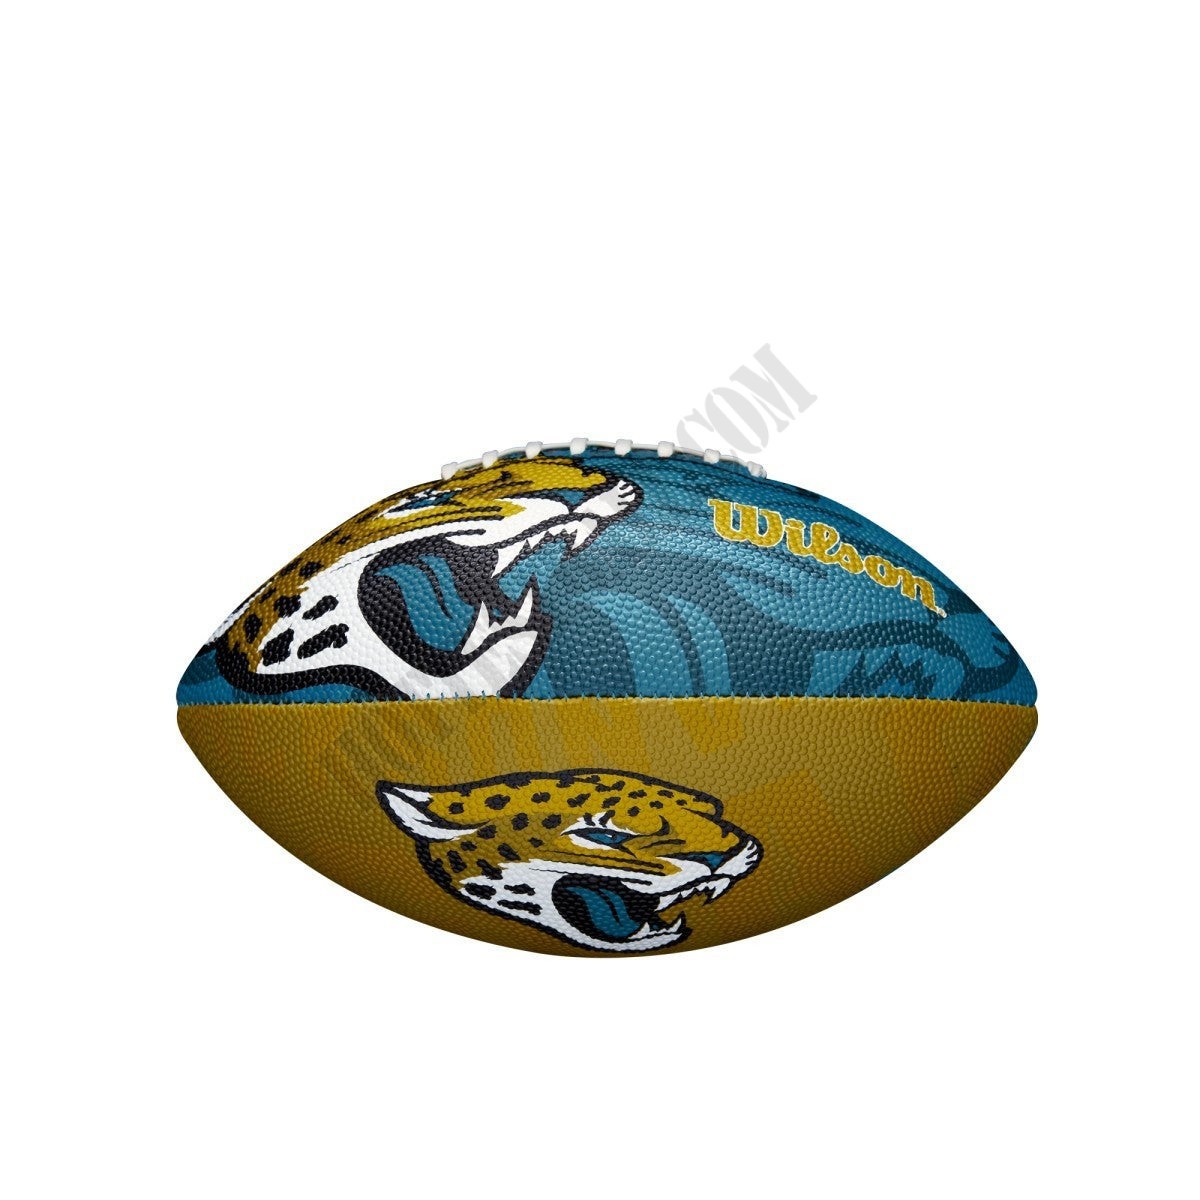 NFL Team Tailgate Football - Jacksonville Jaguars ● Wilson Promotions - -2